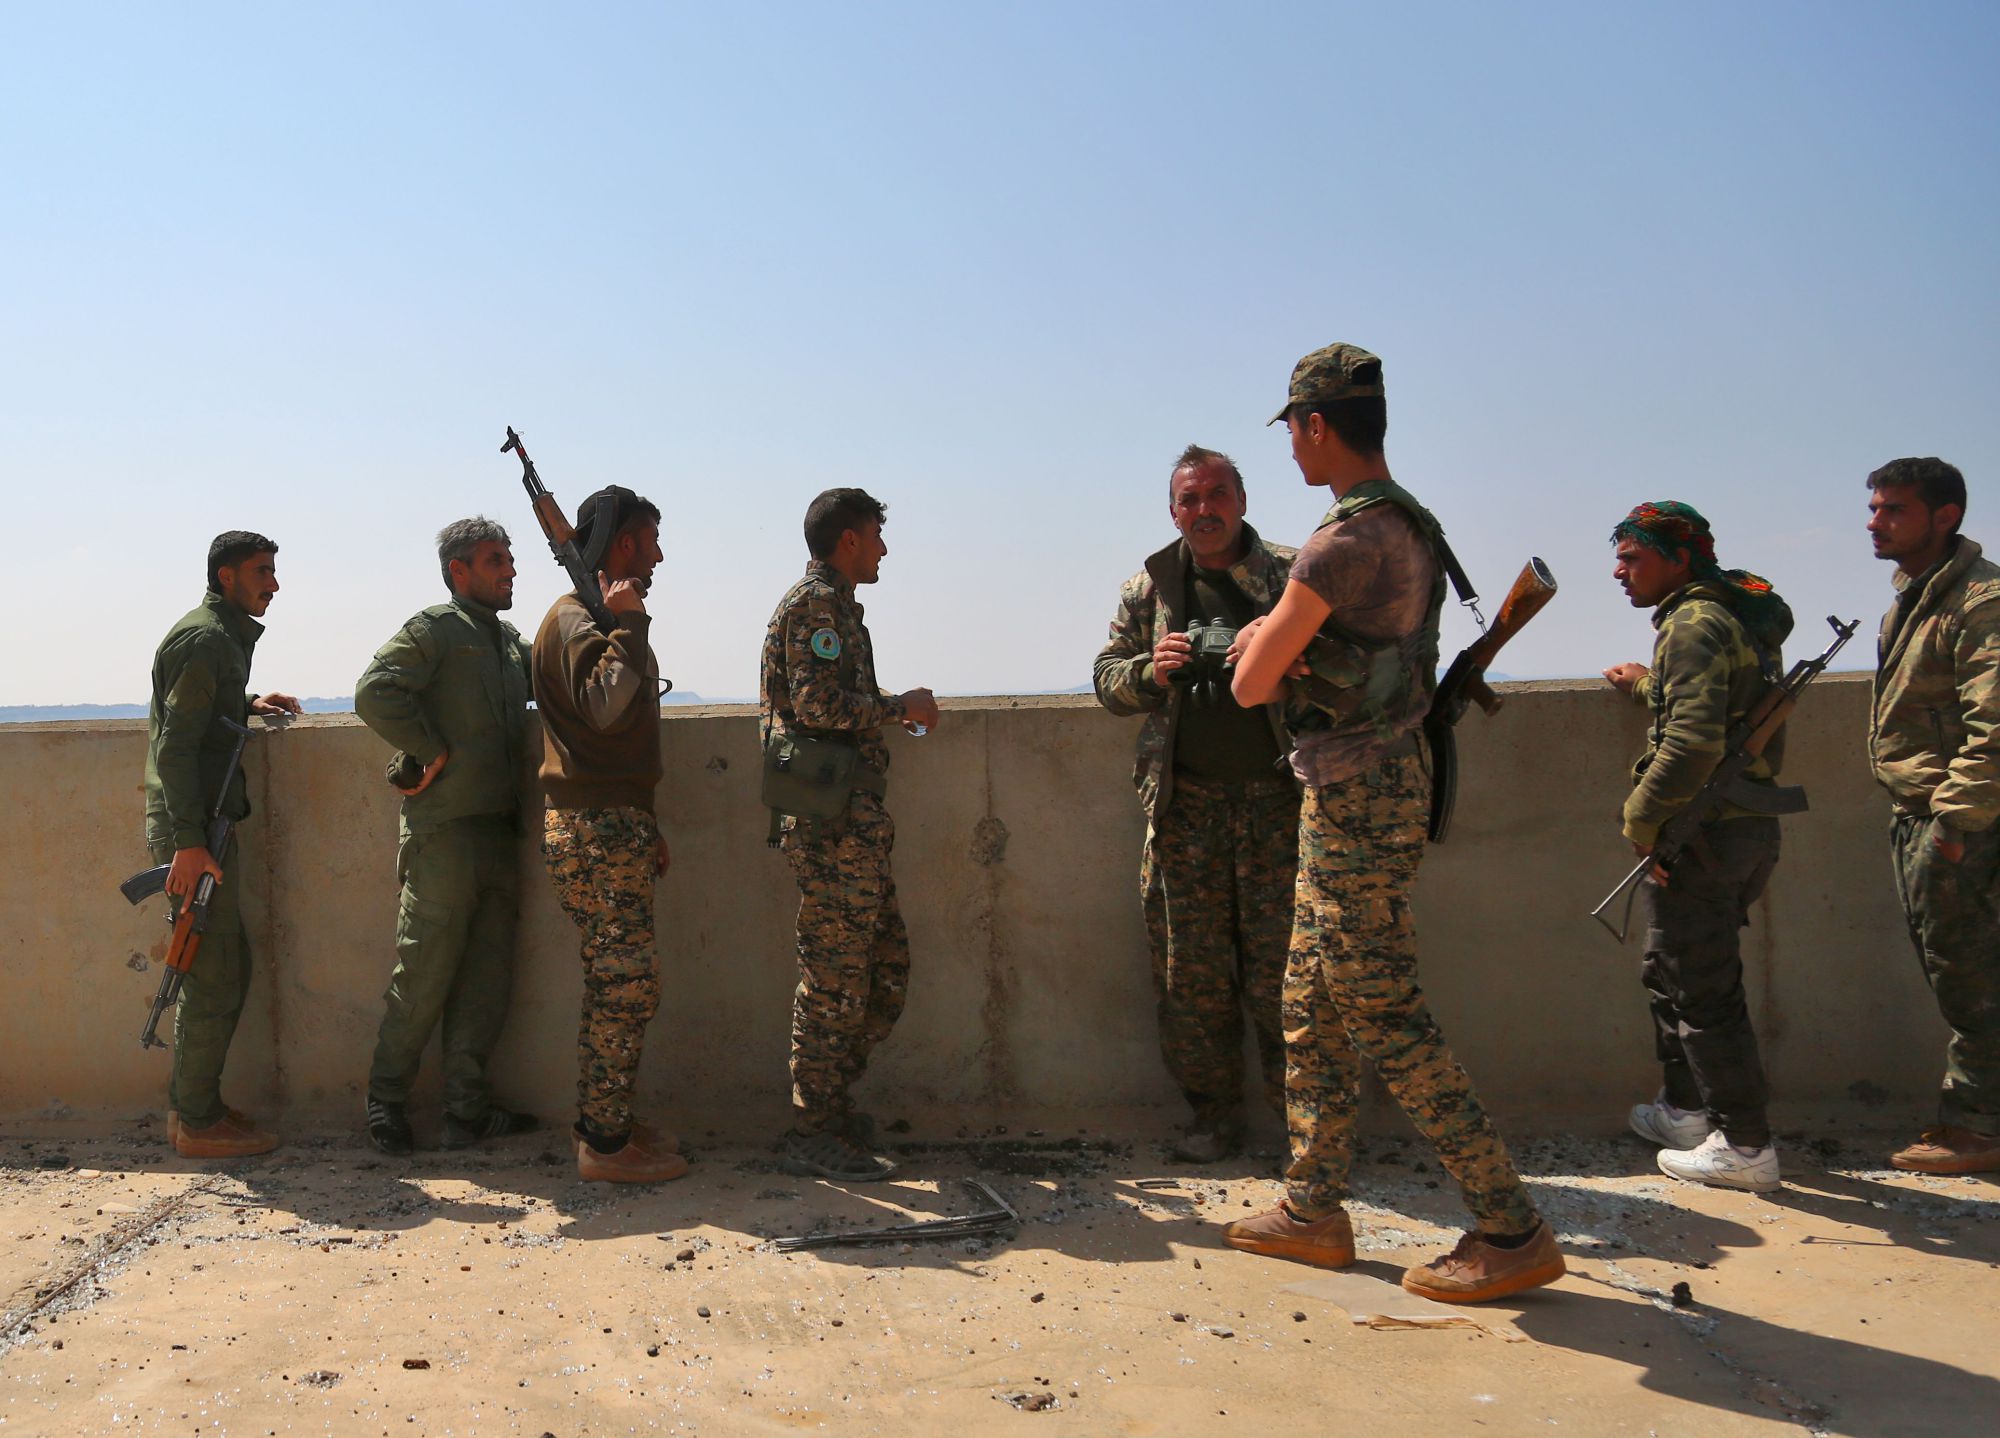 Ράκα: Οι δυνάμεις της SDF κατέλαβαν και τρίτη συνοικία – Στενεύουν τα όρια των ισλαμιστών (φωτό)